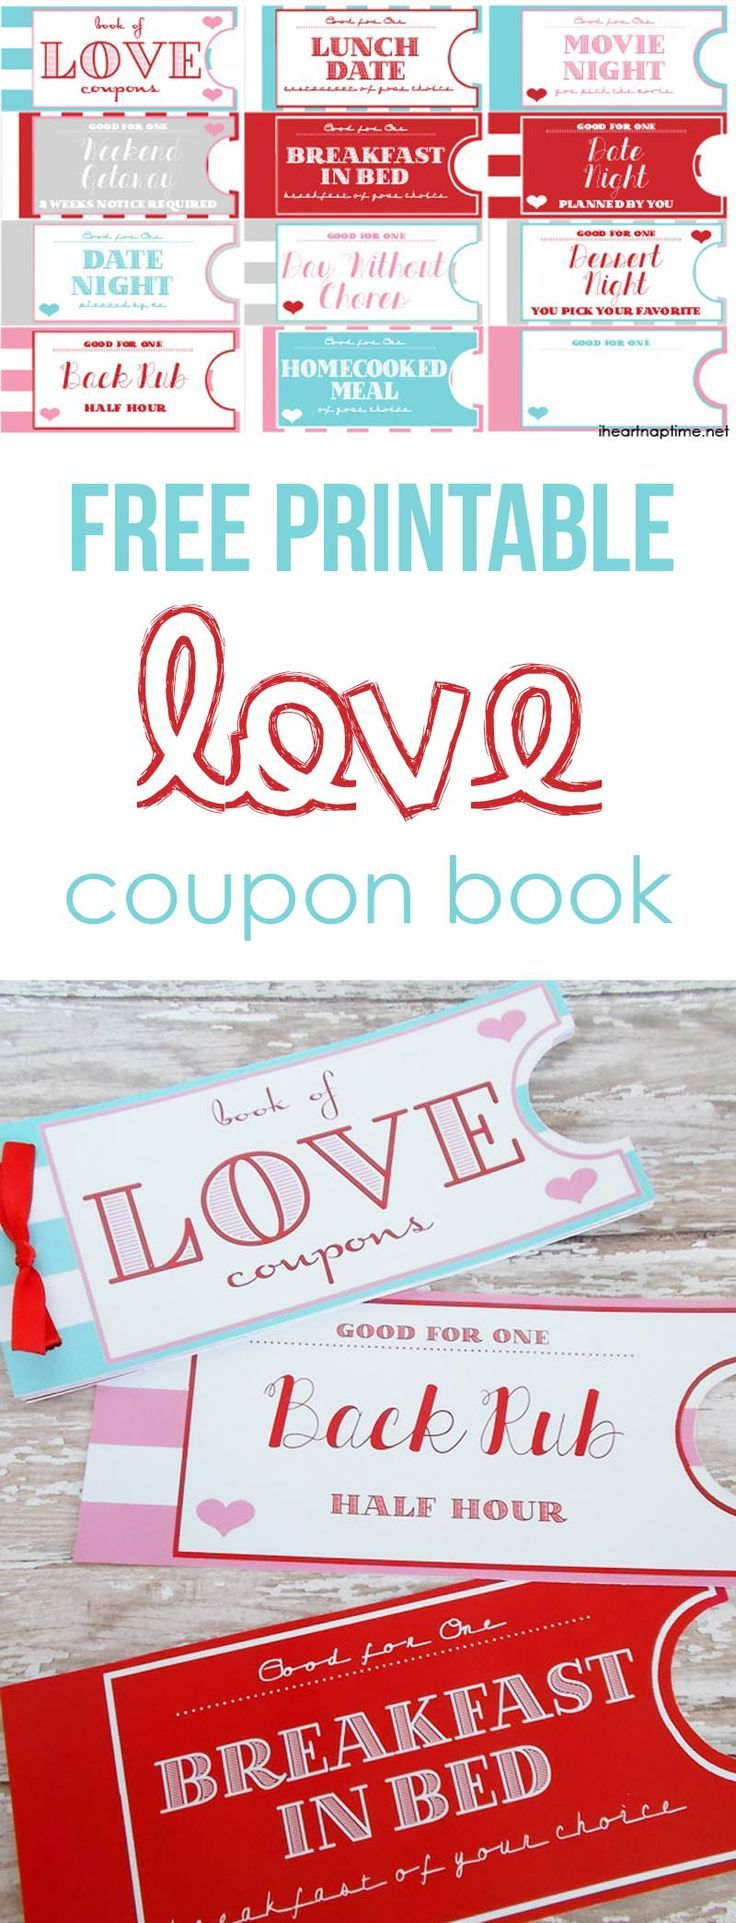 printable-love-coupon-book